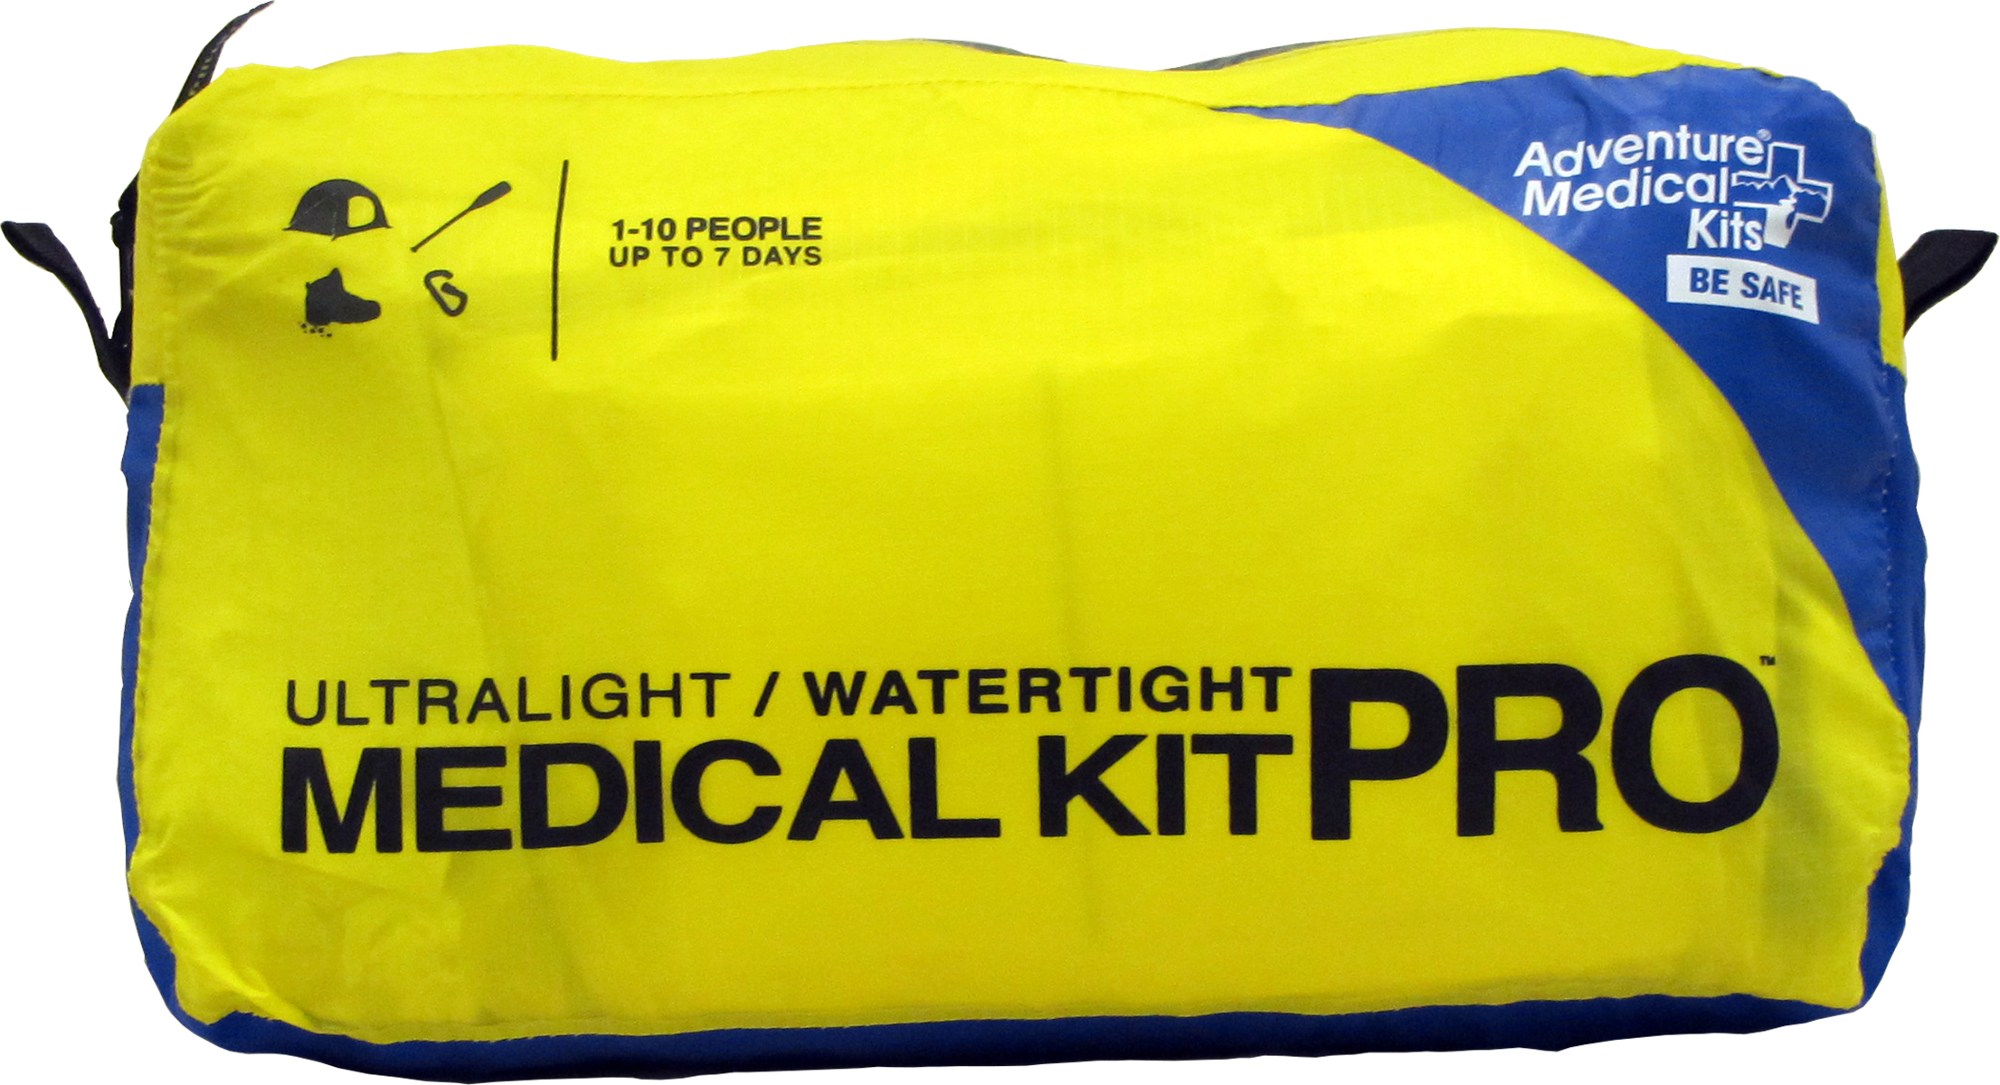 Сверхлегкий/водонепроницаемый медицинский набор PRO Adventure Medical Kits медицинский набор для альпинистов серии mountain adventure medical kits синий